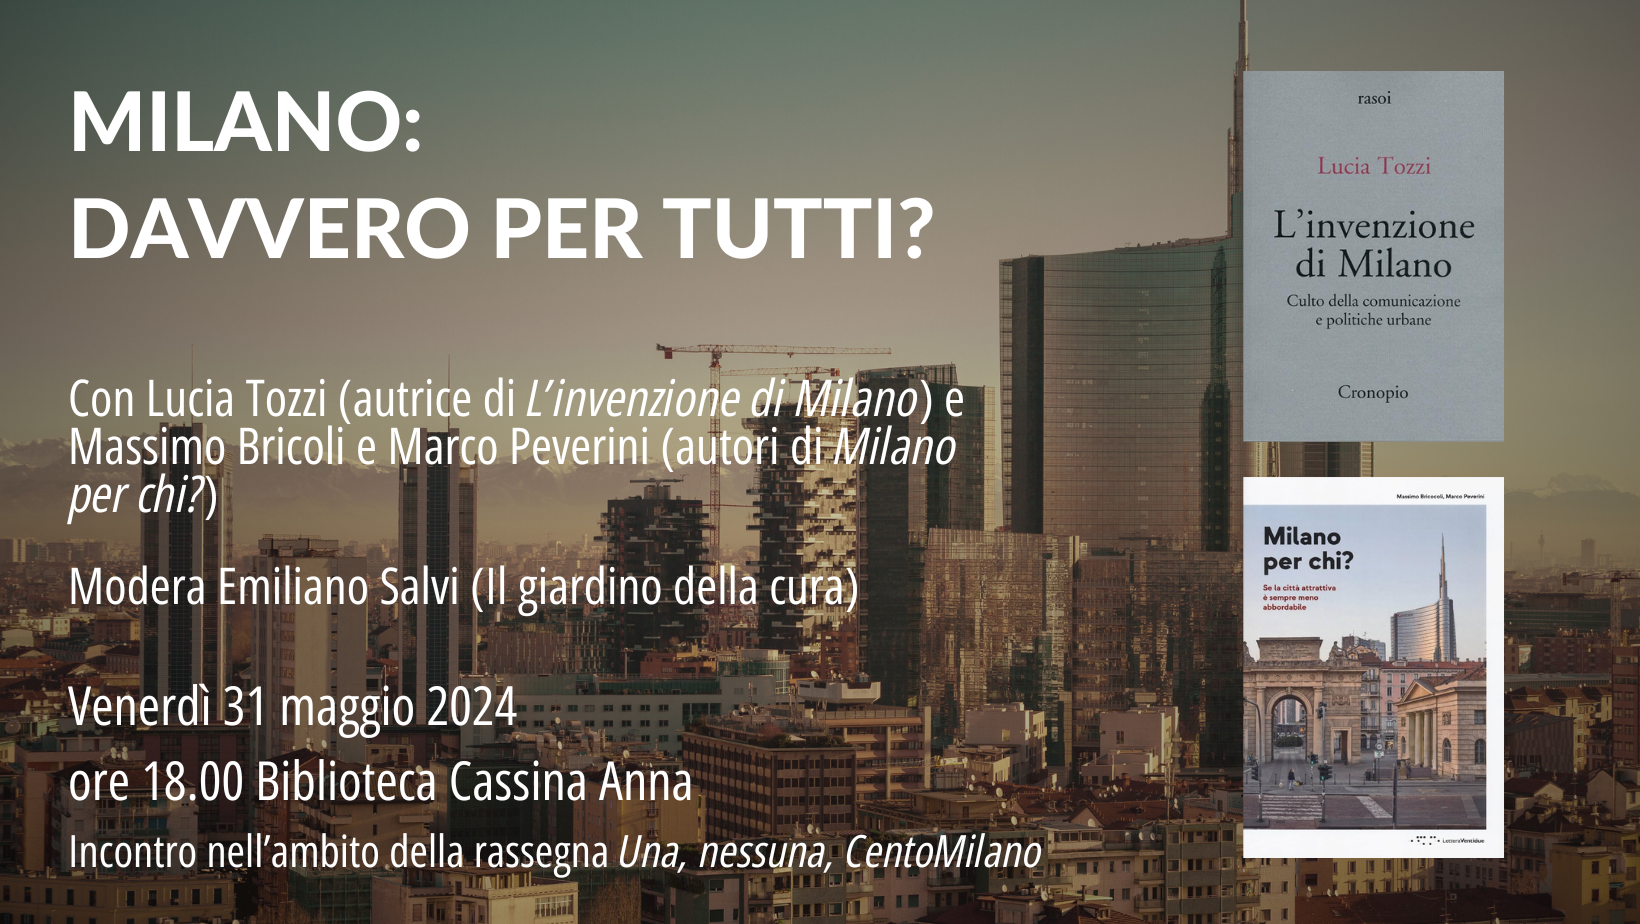 Discussione del libro “Milano per chi?” alla biblioteca Cassina Anna (31 maggio, h18.00, Milano)